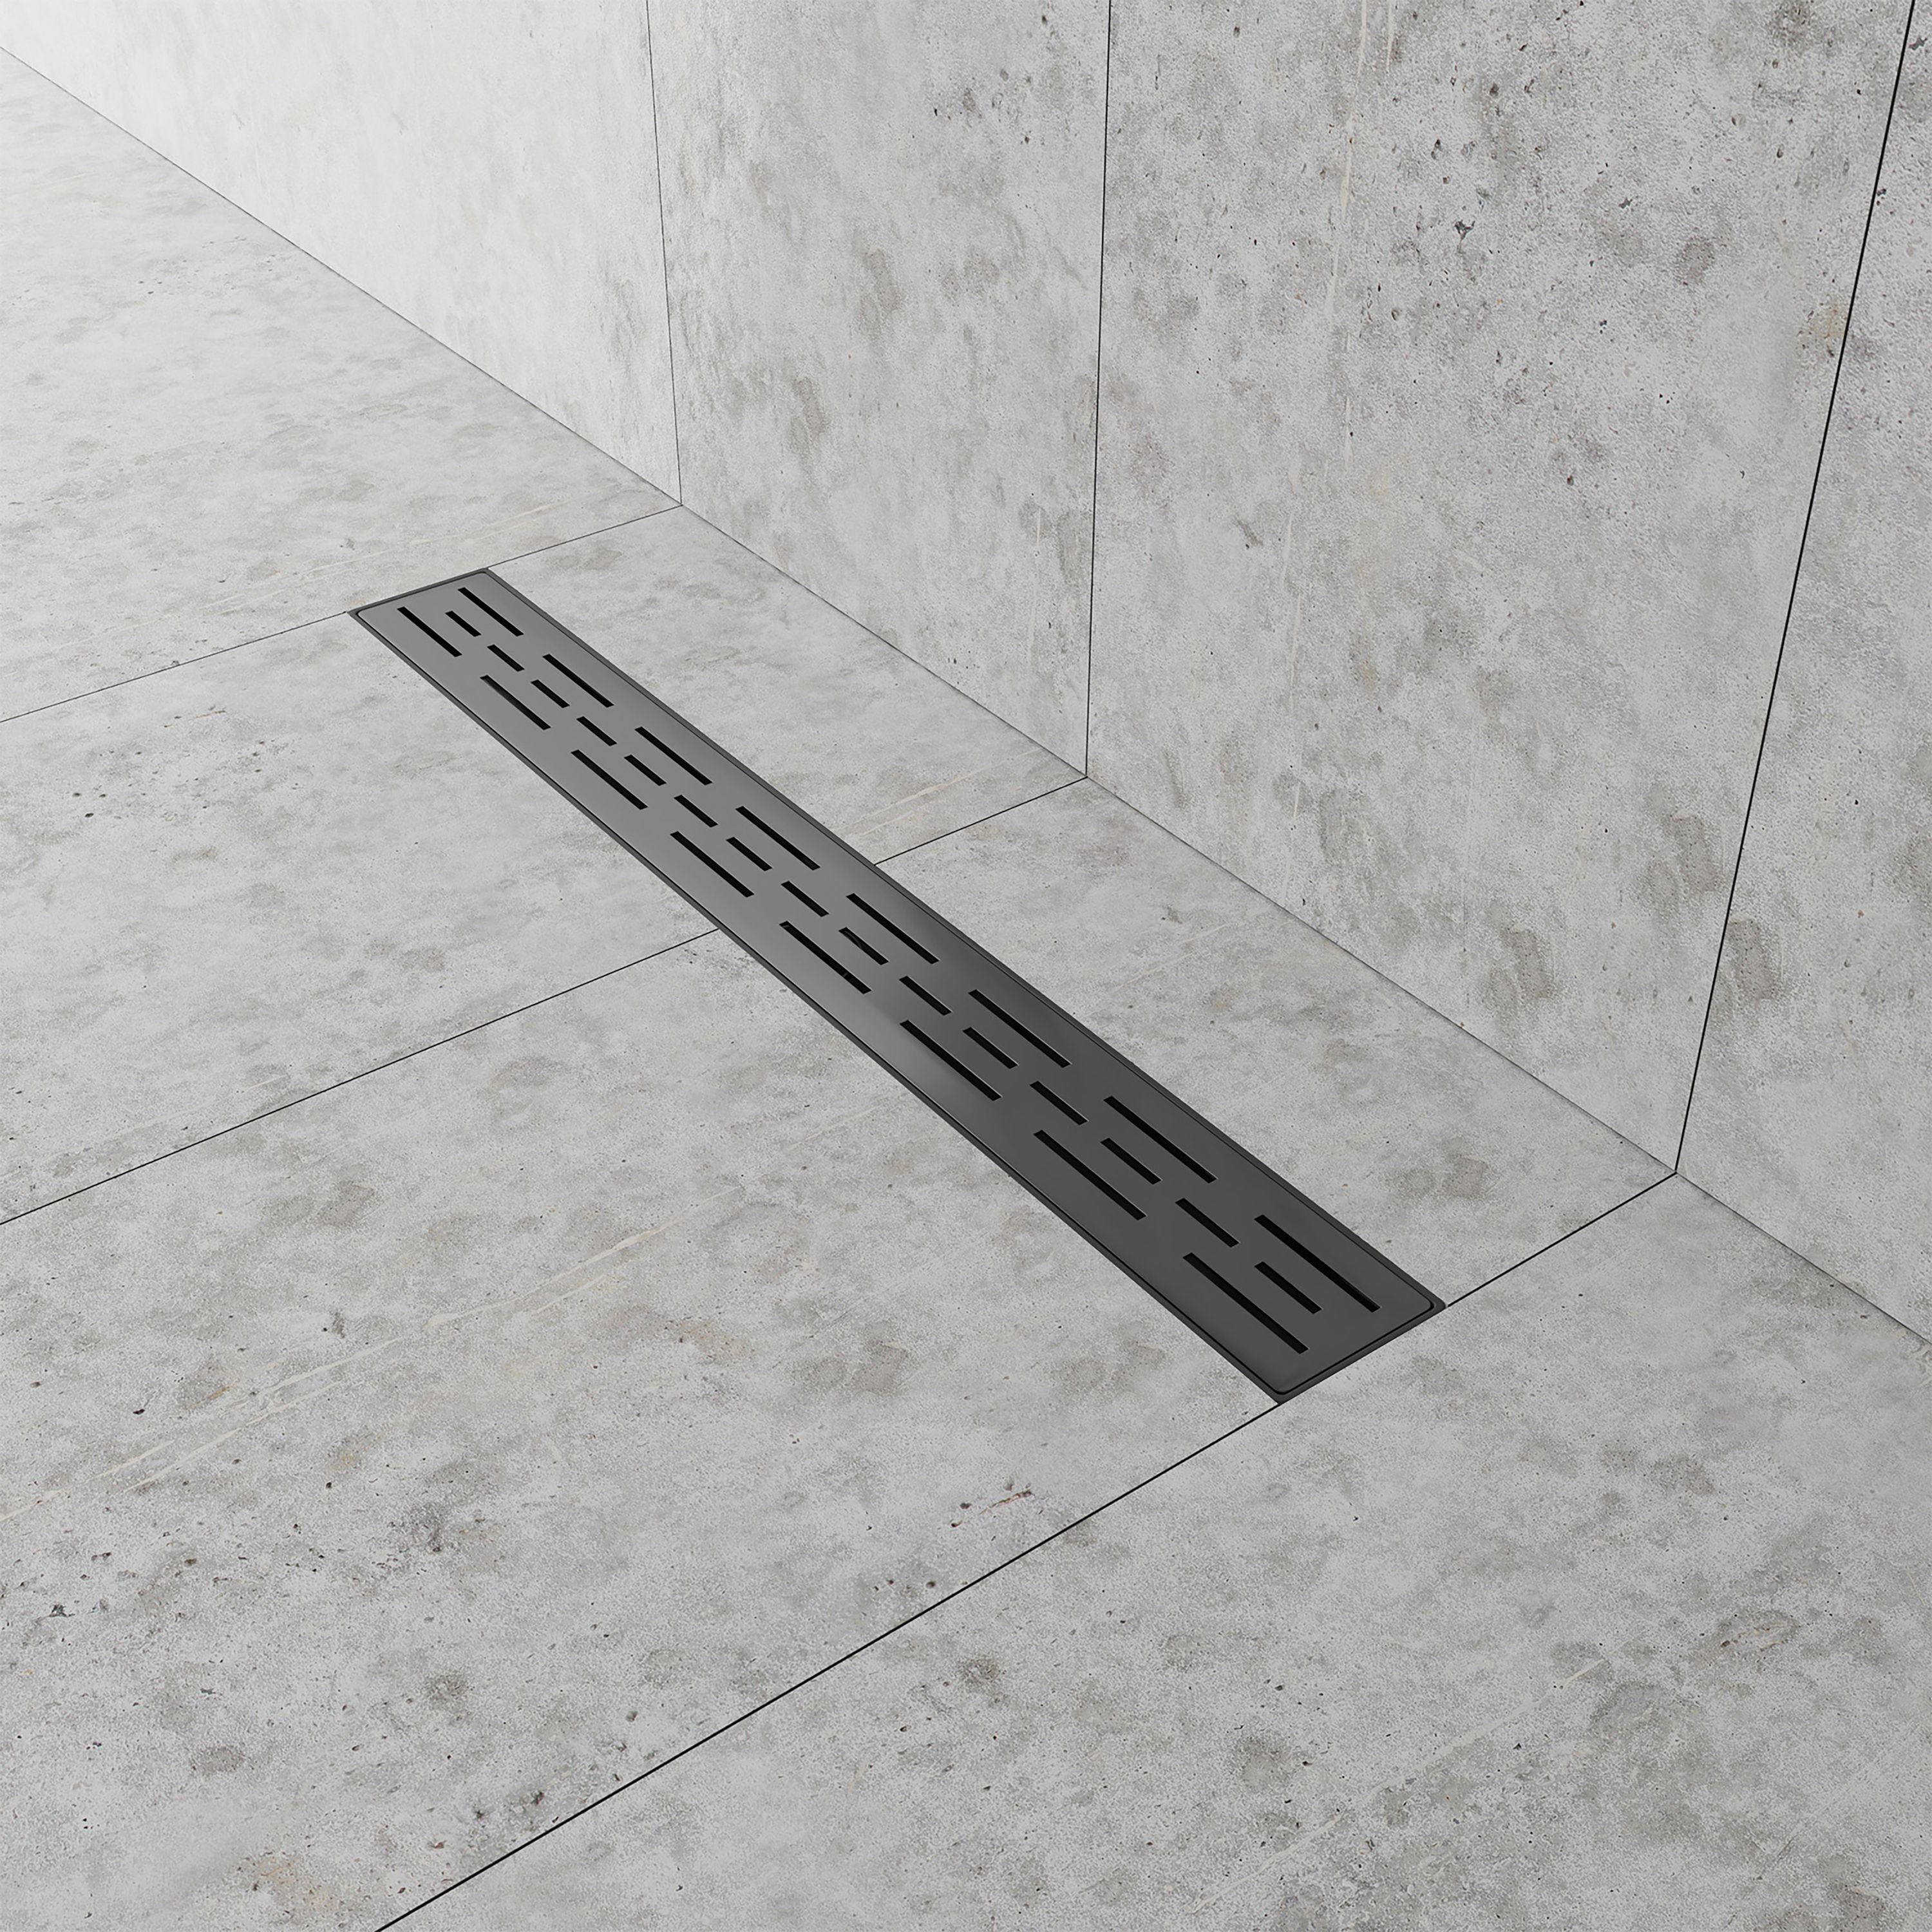 70 cm Bathroom Floor Linear Shower Drain 304 Stainless Steel-Tile Insert New